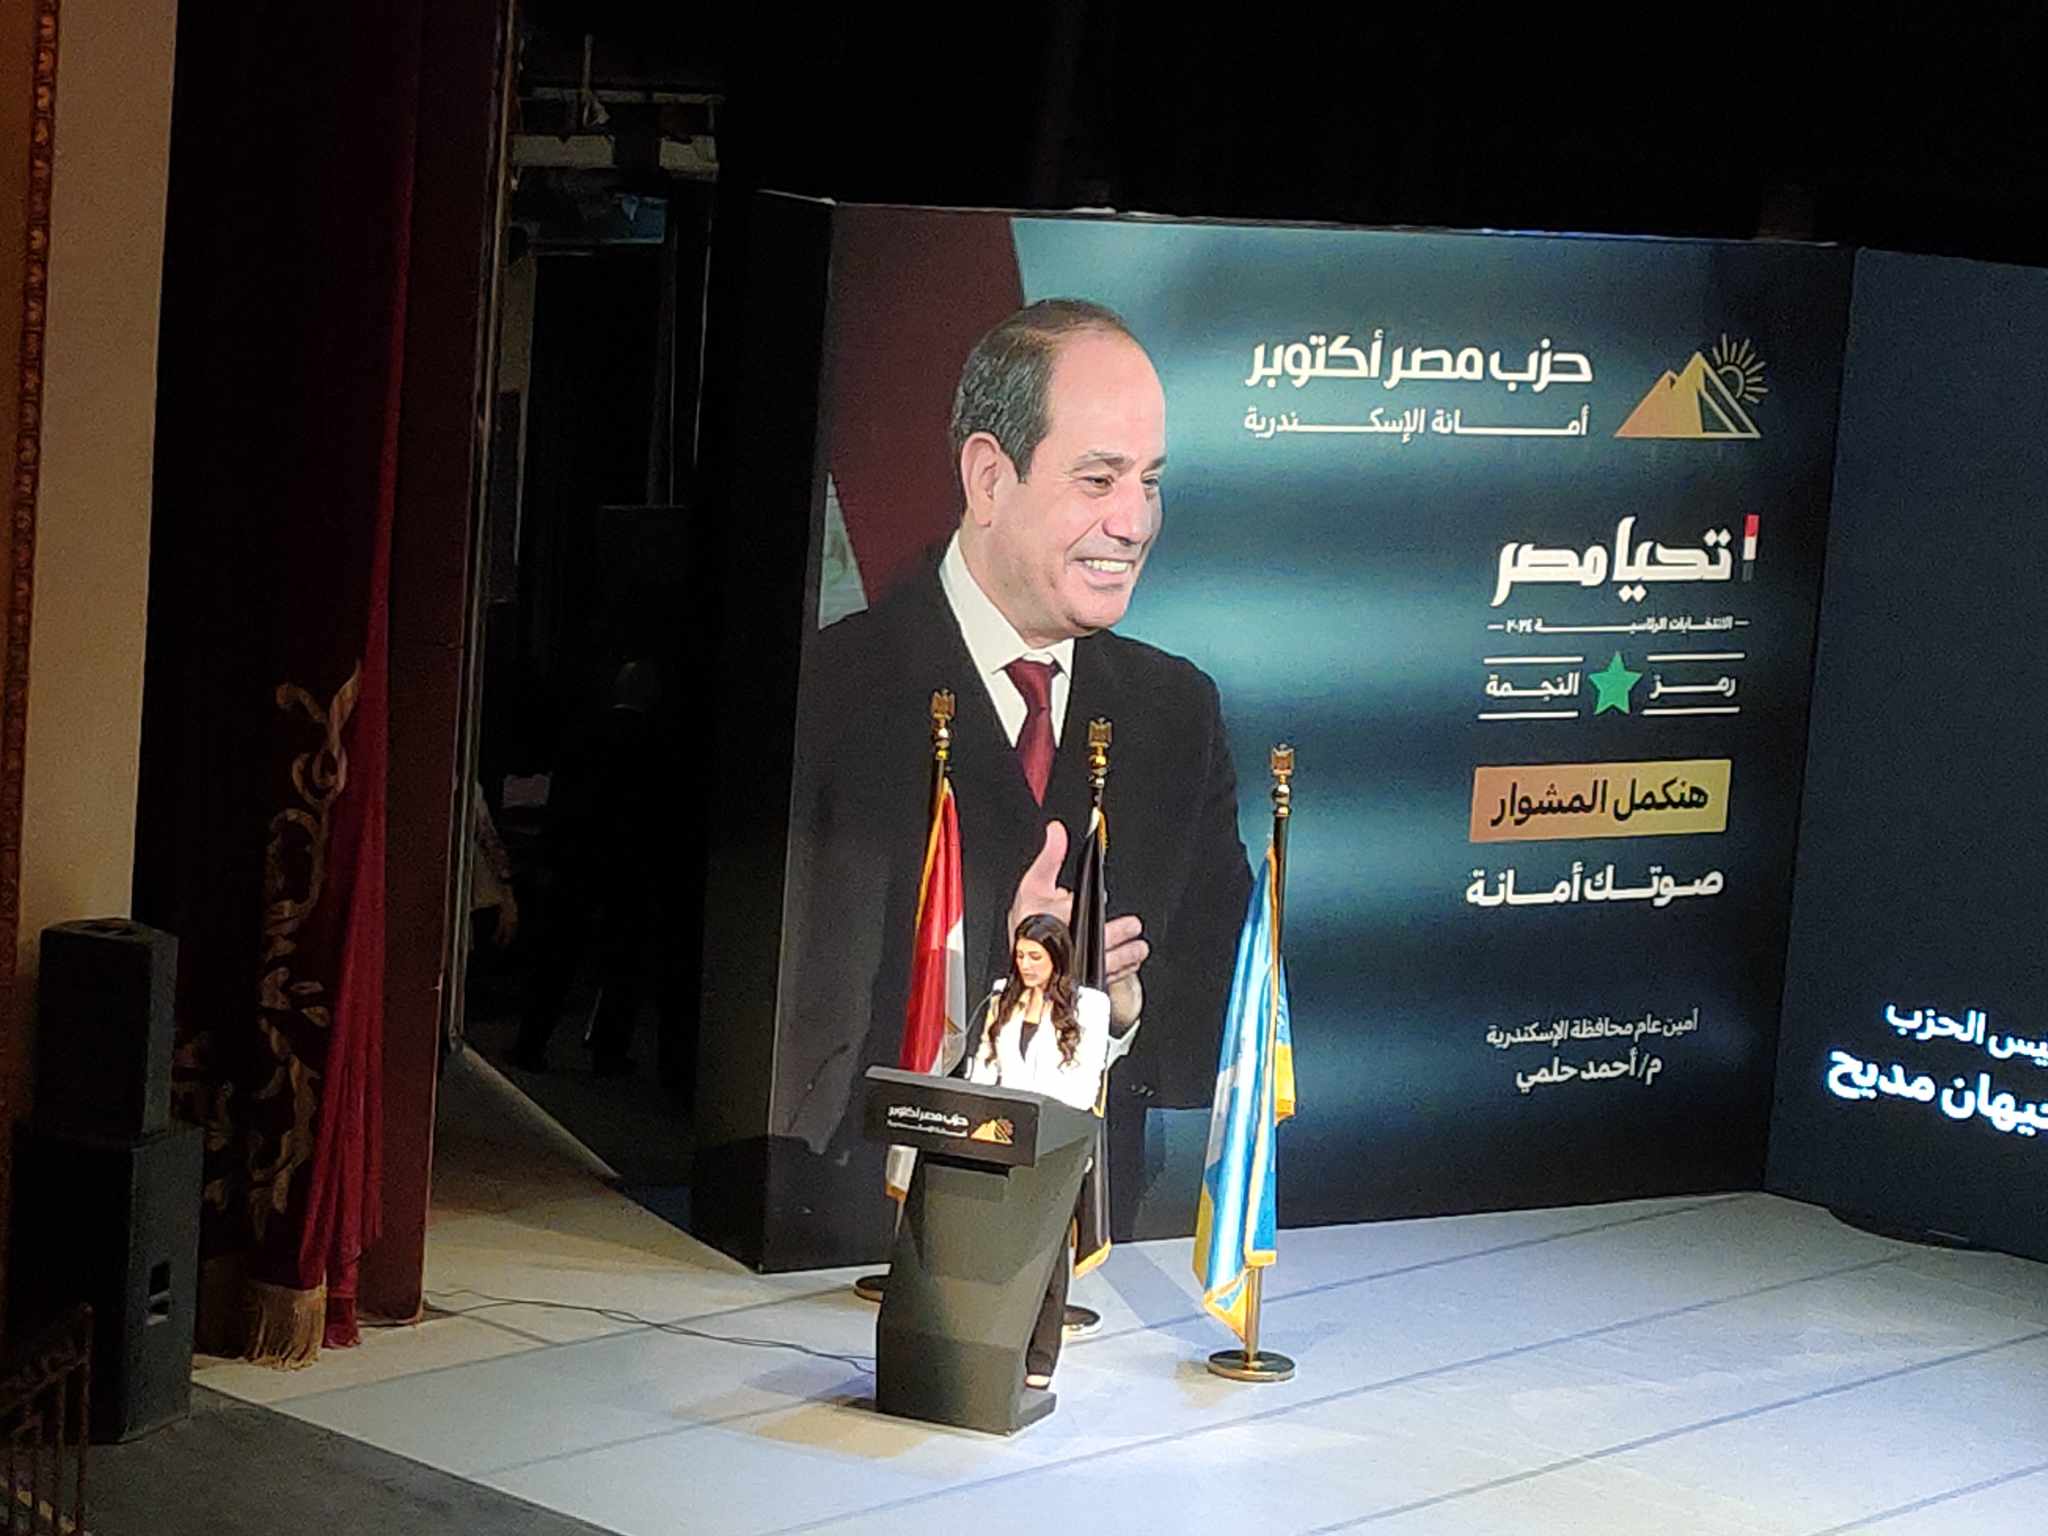 حزب مصر اكتوبر ينظم مؤتمر دعم للمرشح الرئاسي عبد الفتاح السيسي